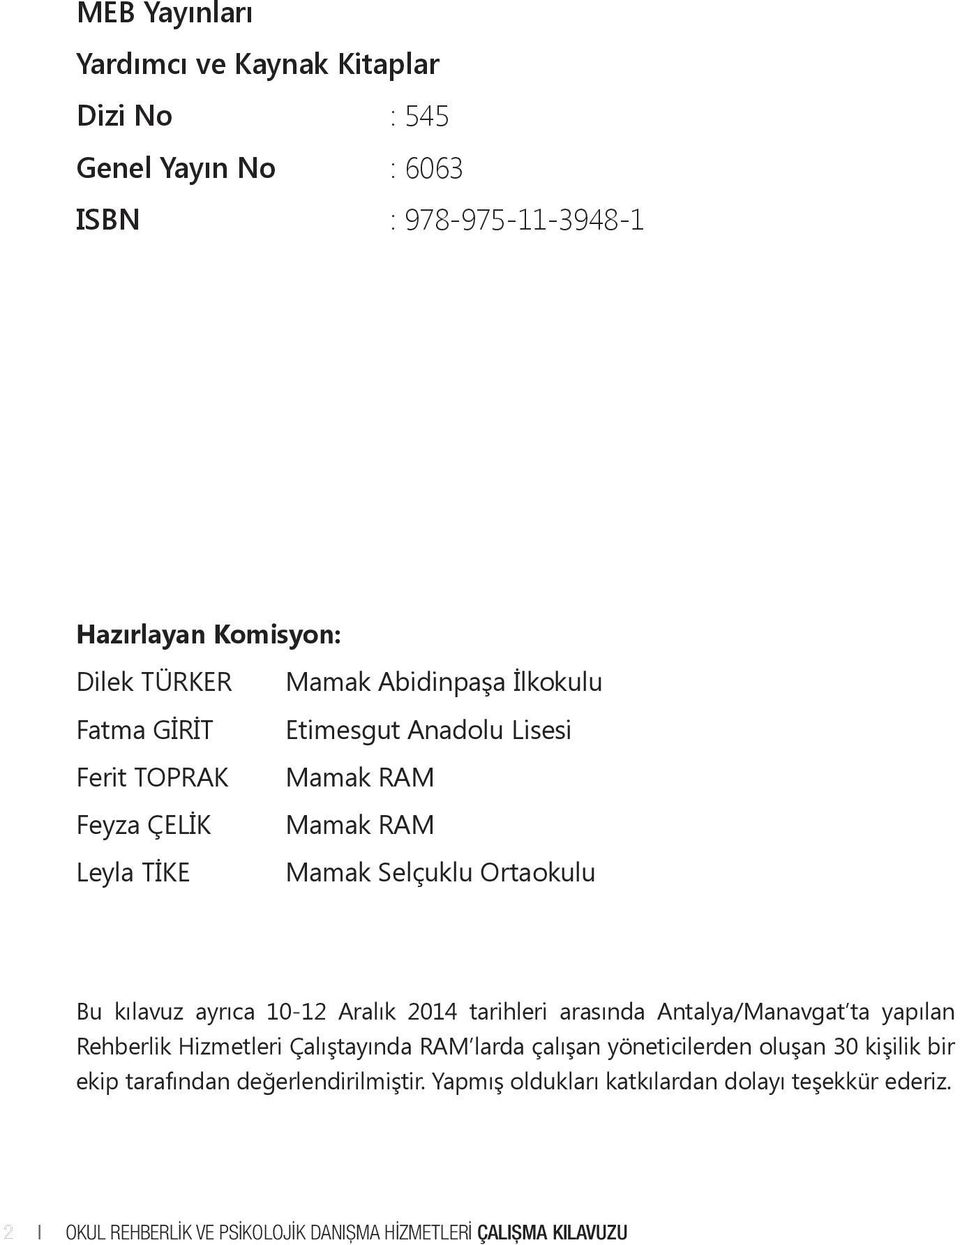 10-12 Aralık 2014 tarihleri arasında Antalya/Manavgat ta yapılan Rehberlik Hizmetleri Çalıştayında RAM larda çalışan yöneticilerden oluşan 30 kişilik